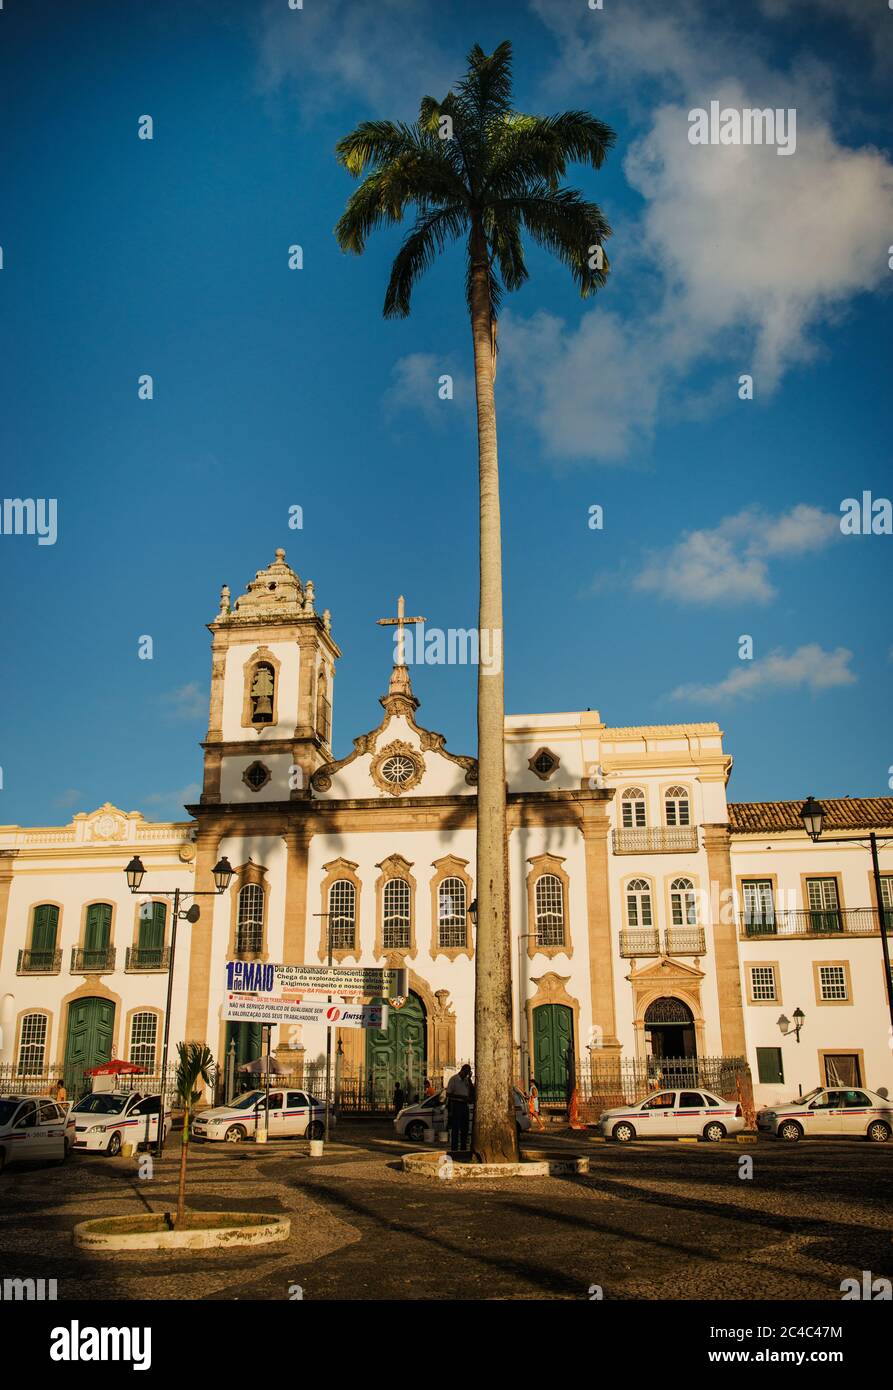 Courtyard and church of Nosso Senhor do Bonfim, Salvador da Bahia, Brazil, South America Stock Photo